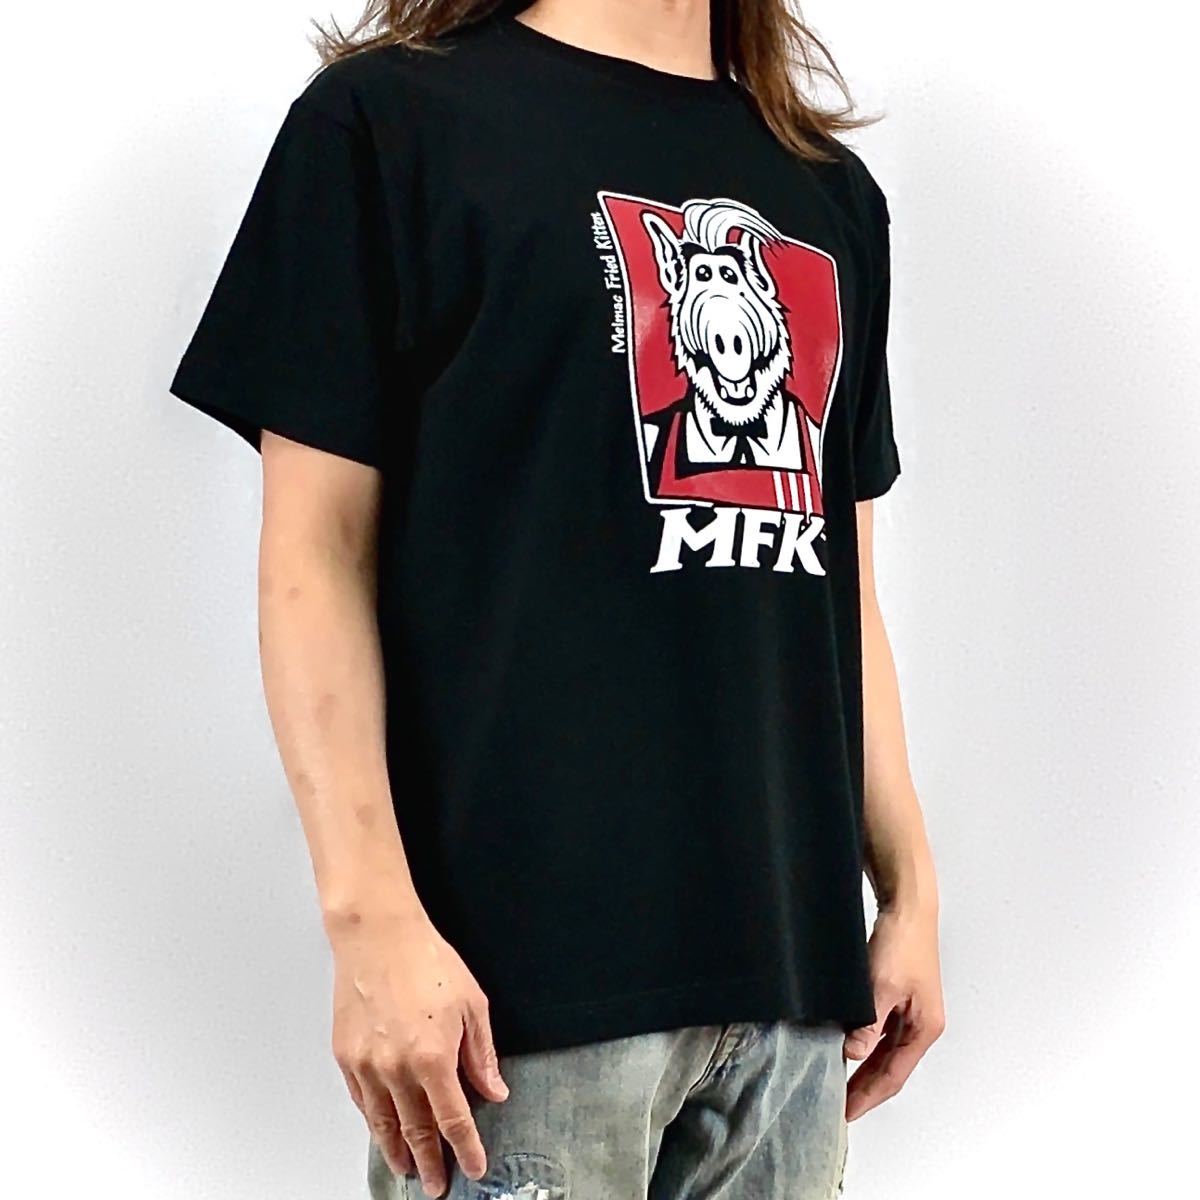 新品 ALF アルフ メルマック星 宇宙人 KFC ケンタッキー フライドチキン カーネルサンダース Tシャツ Lサイズ UNI 男女兼用 ユニセックス